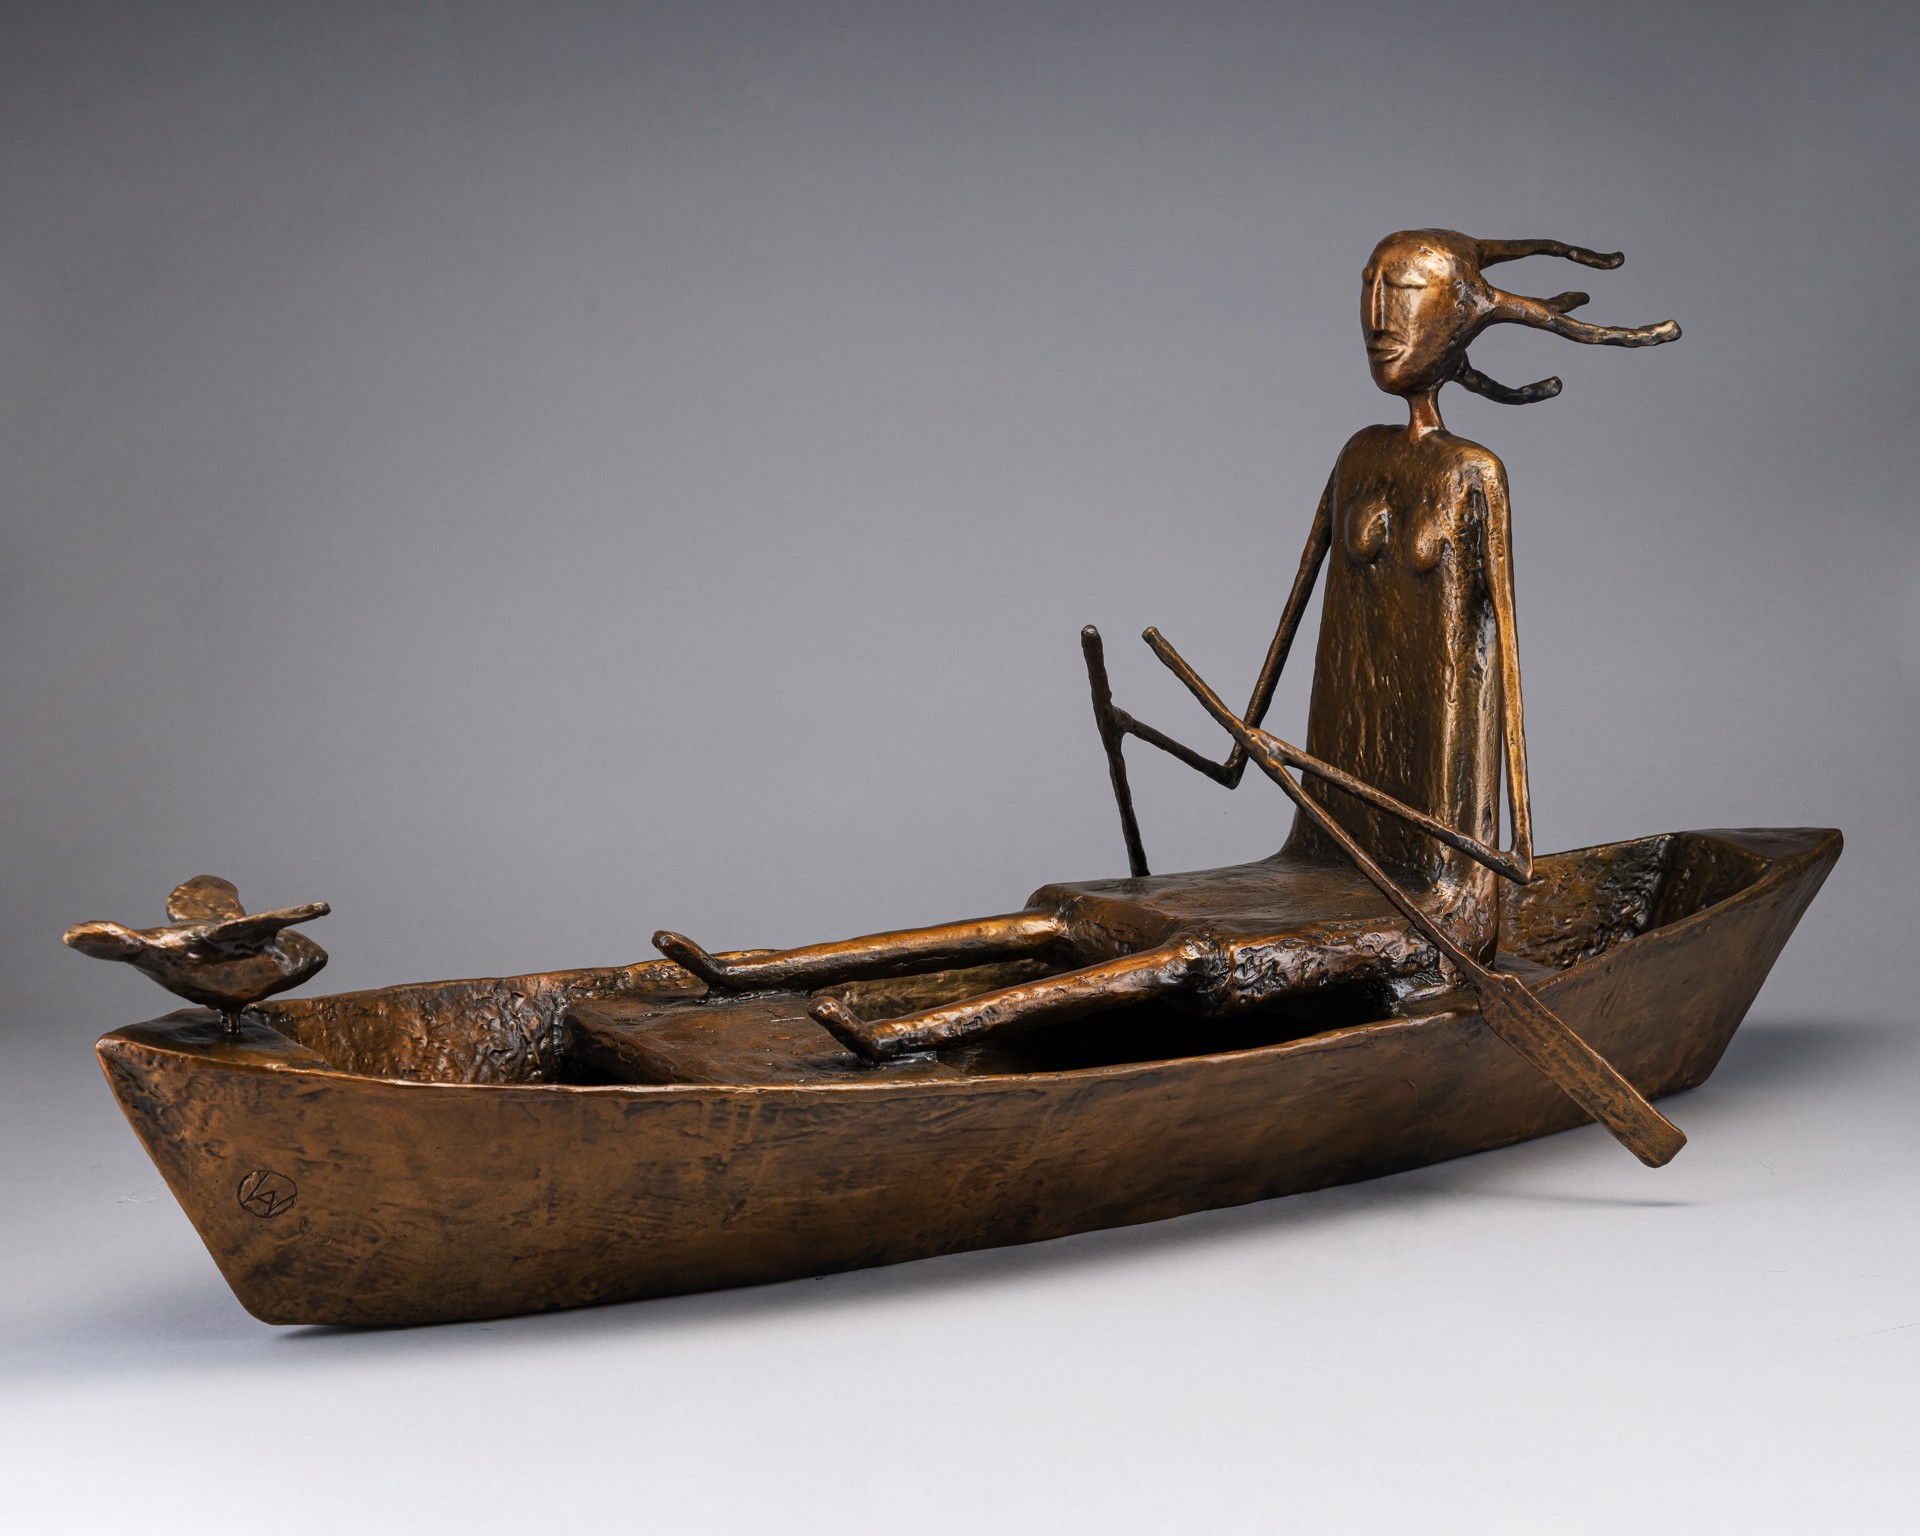 Woman in Boat by Allen Wynn